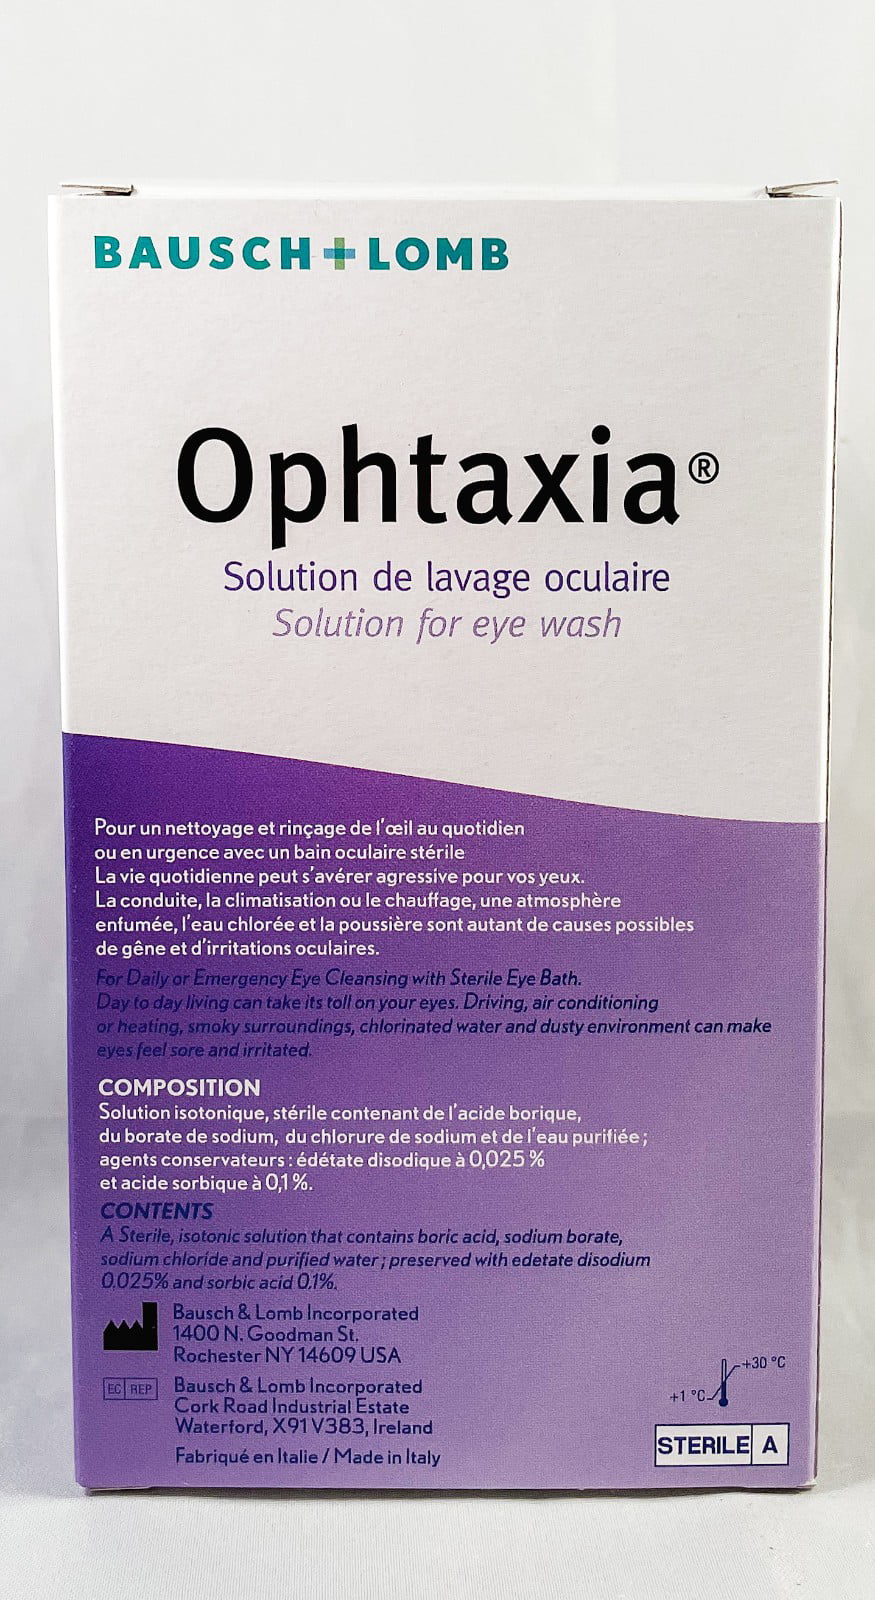 Acheter Bausch & Lomb Ophtaxia solution de lavage oculaire Flapulles 10x5ml  ? Maintenant pour € 8.6 chez Viata